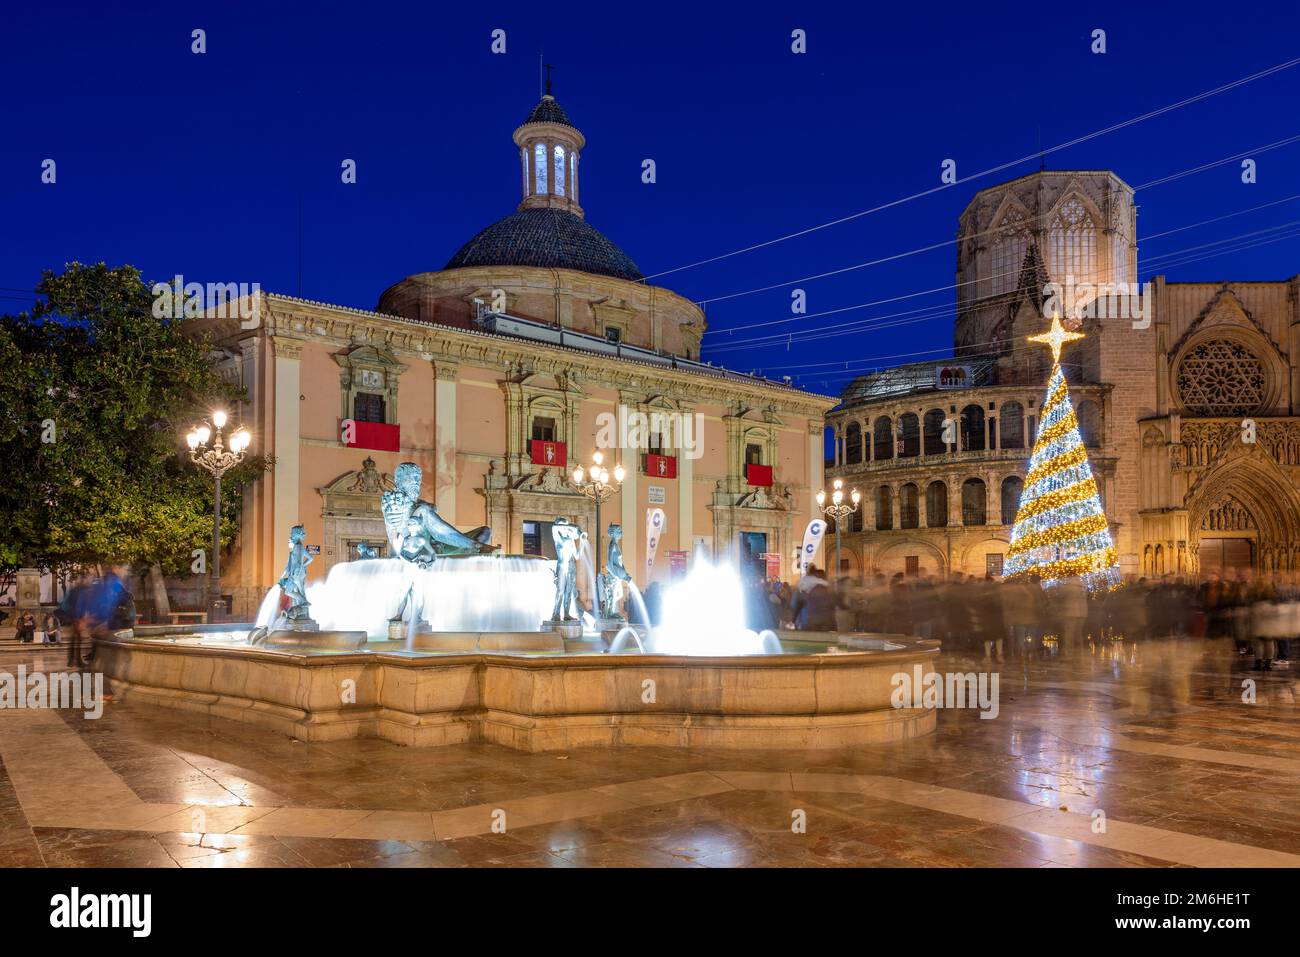 Plaza de la Virgen, Valence, Communauté Valencienne, Espagne Banque D'Images